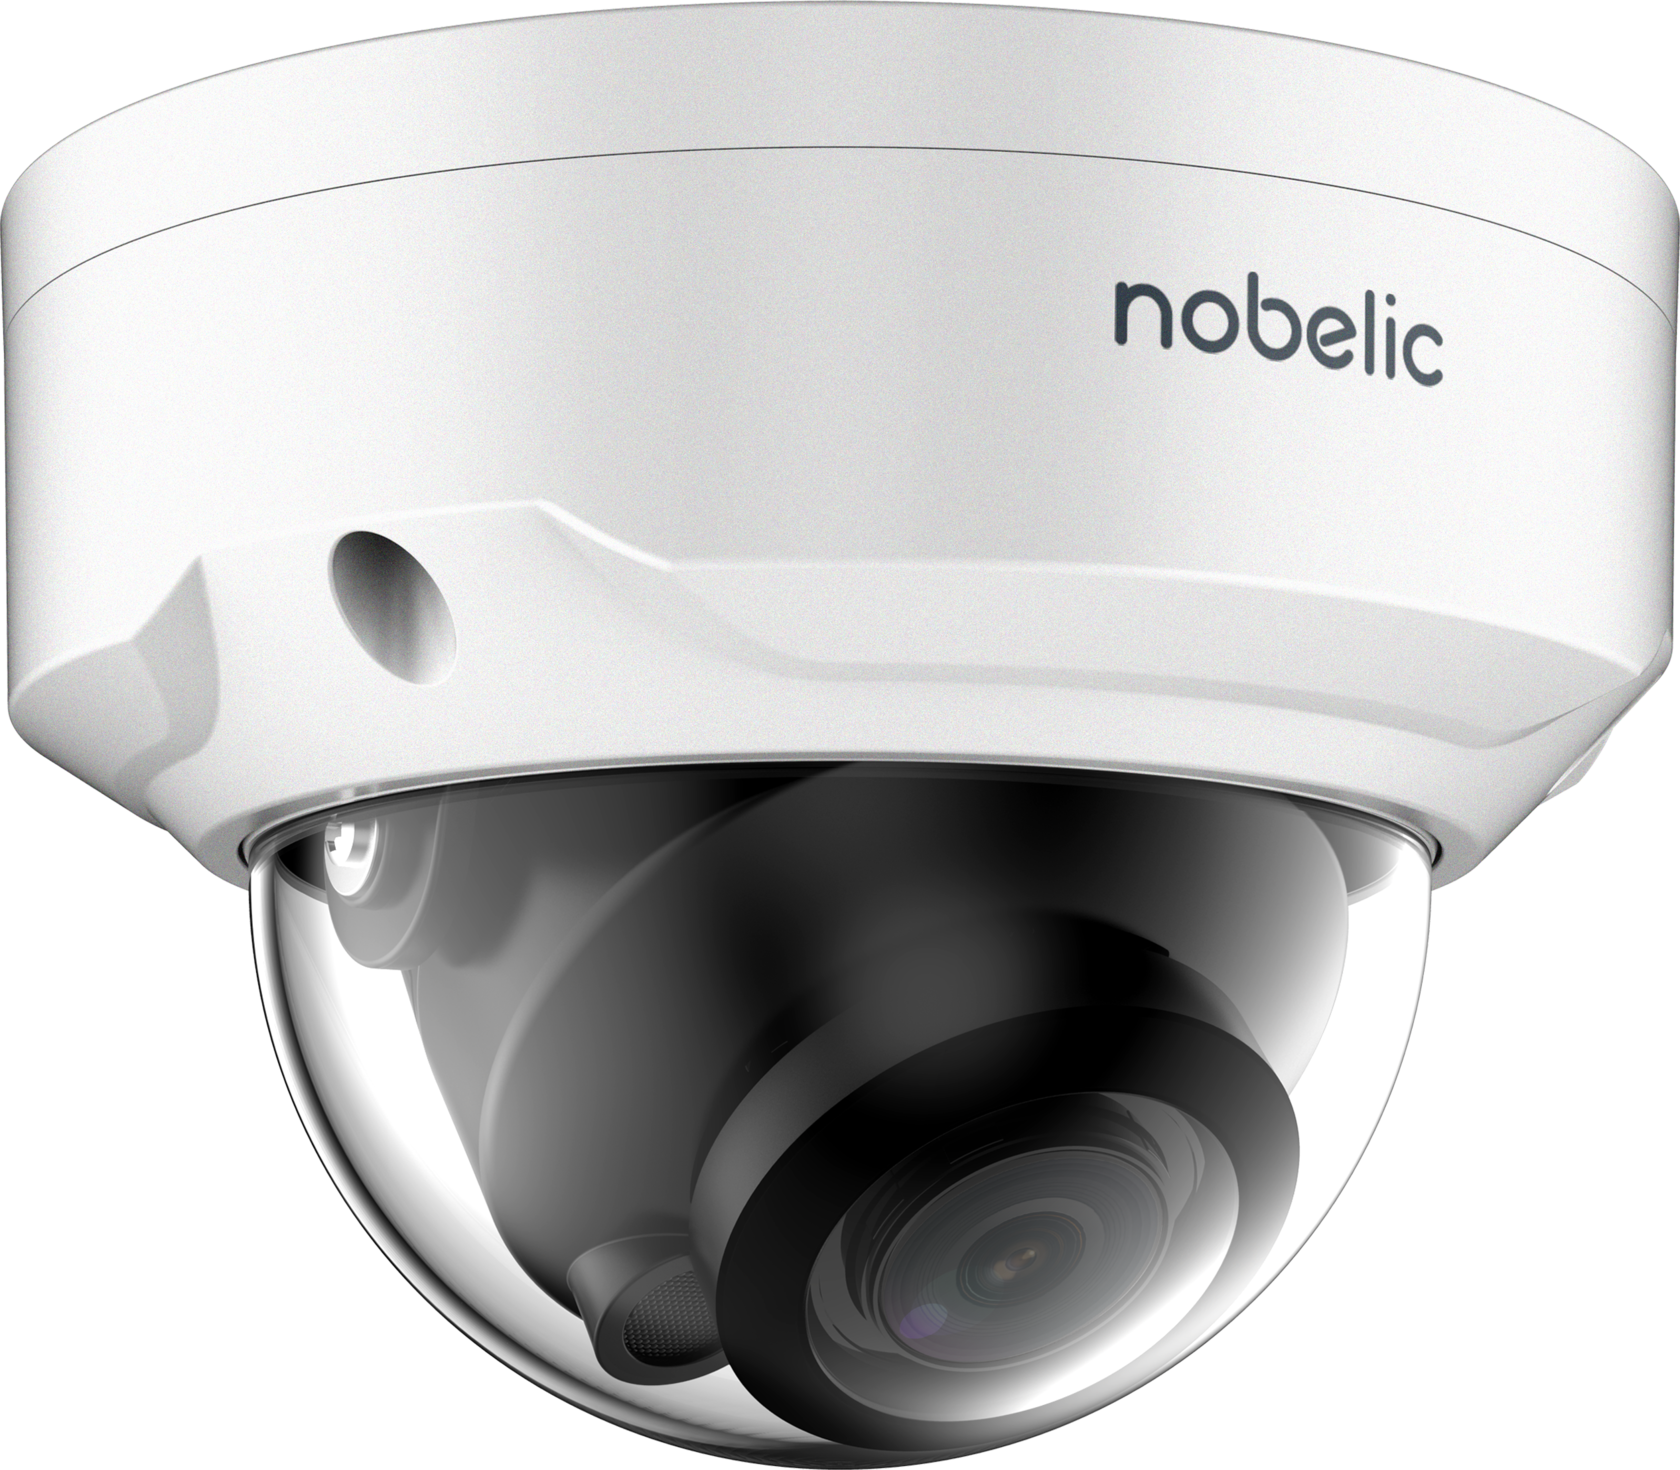 Камера ivideon cute. NBLC-2431f. IP-камера NBLC-1110f-MDS. Nobelic 2431f. Nobelic NBLC-2430f.